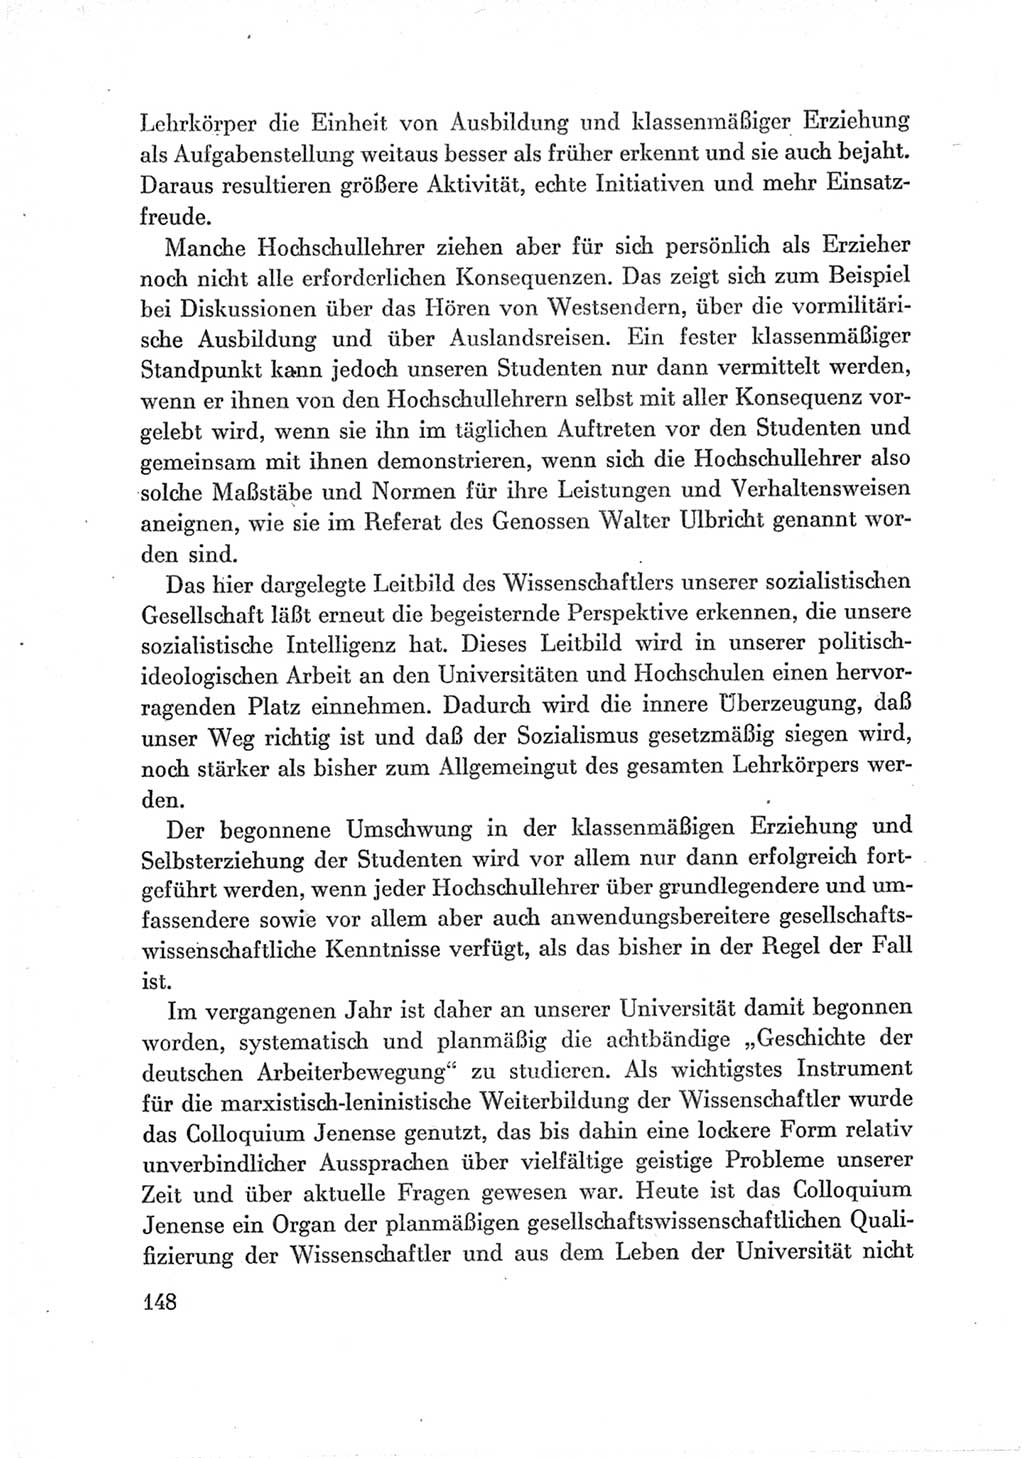 Protokoll der Verhandlungen des Ⅶ. Parteitages der Sozialistischen Einheitspartei Deutschlands (SED) [Deutsche Demokratische Republik (DDR)] 1967, Band Ⅲ, Seite 148 (Prot. Verh. Ⅶ. PT SED DDR 1967, Bd. Ⅲ, S. 148)